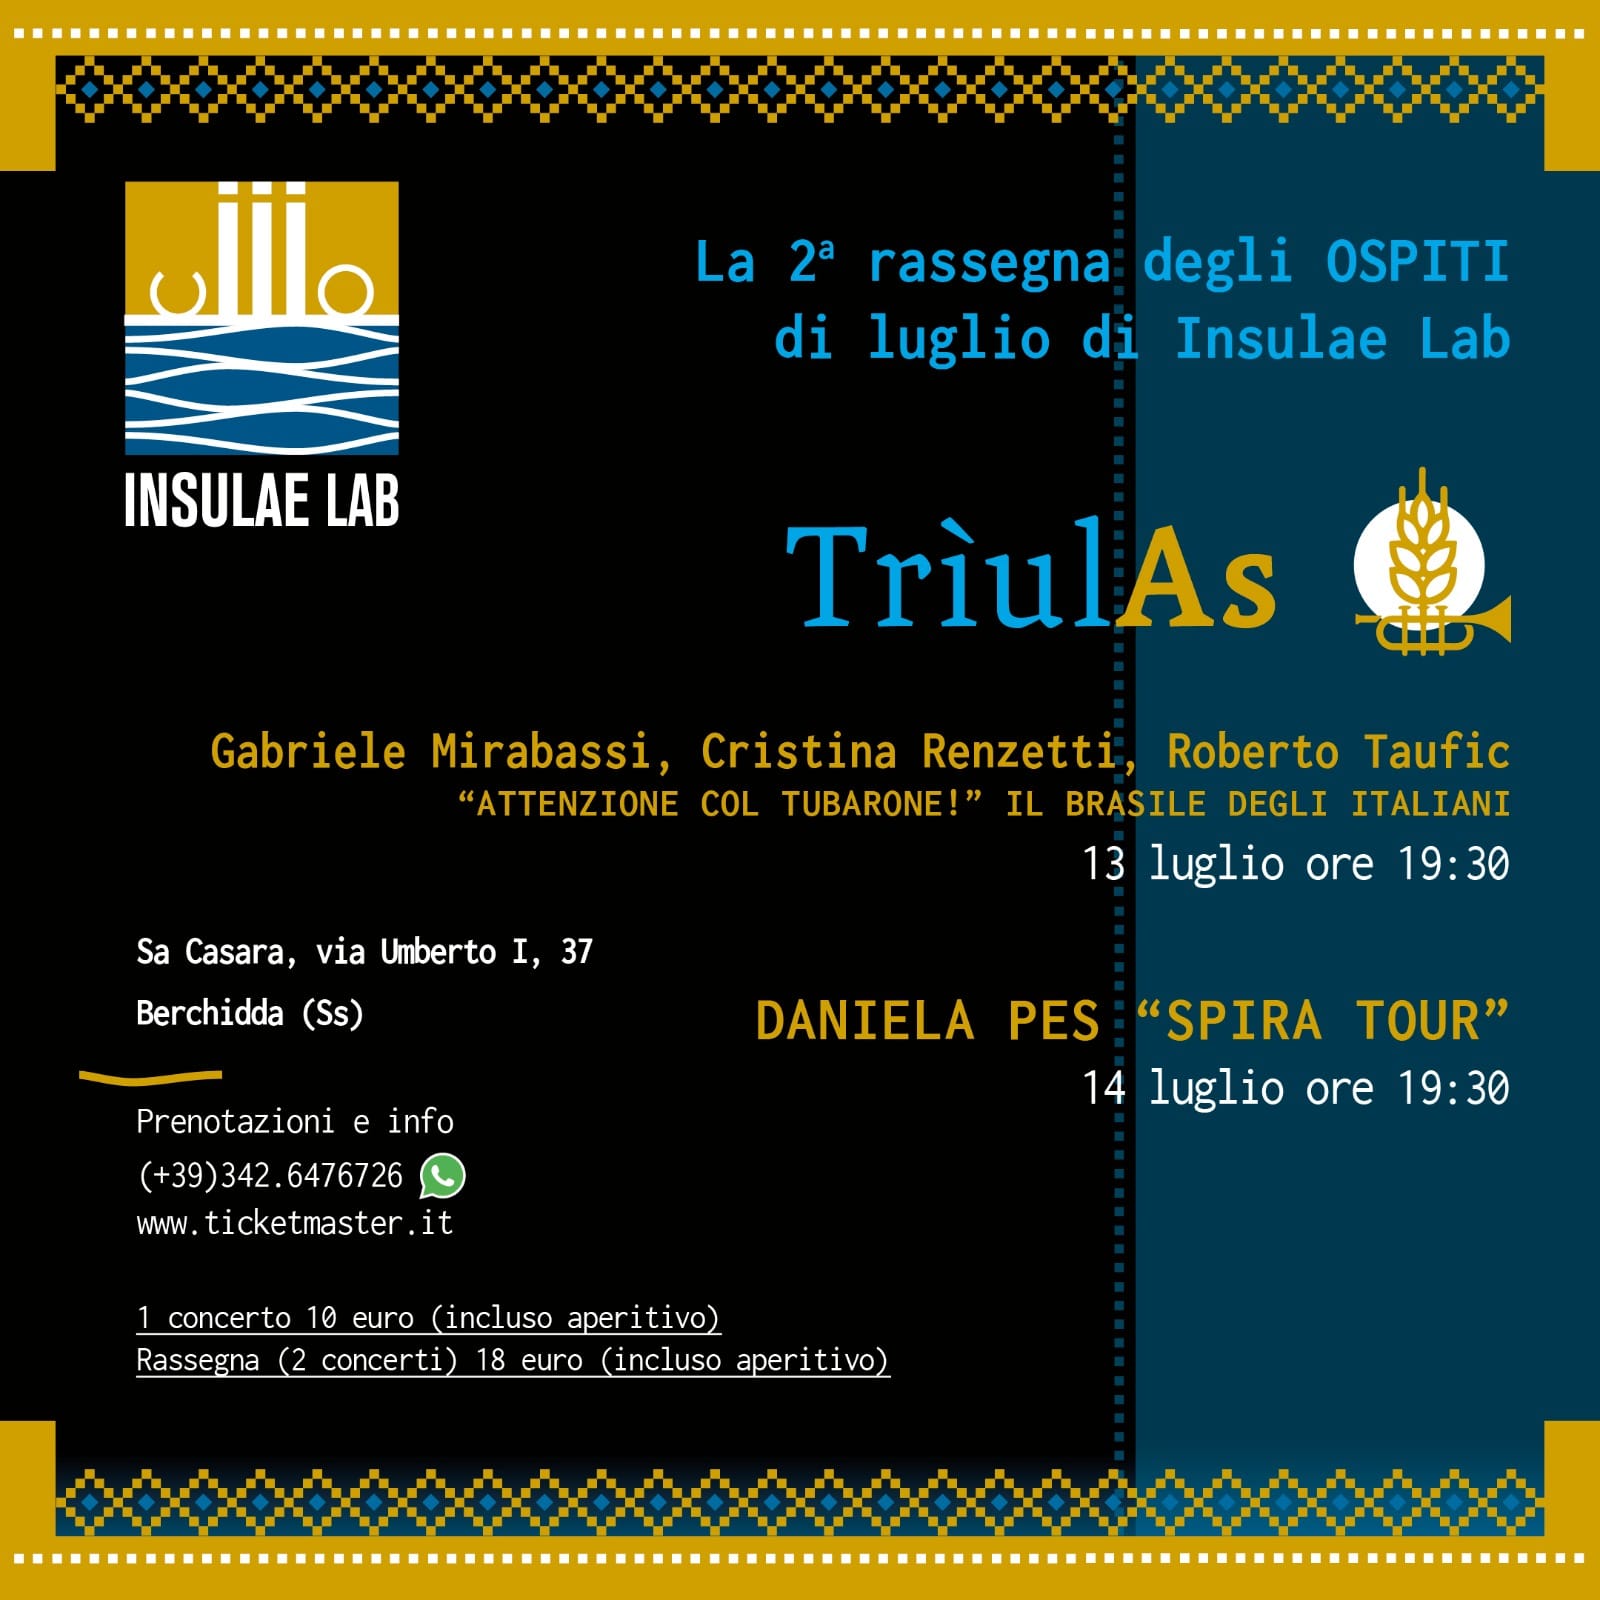 Berchidda, il mese di “Trìulas” si accende con il Gabriele Mirabassi trio e  il Premio Tenco Daniela Pes – Report Sardegna 24